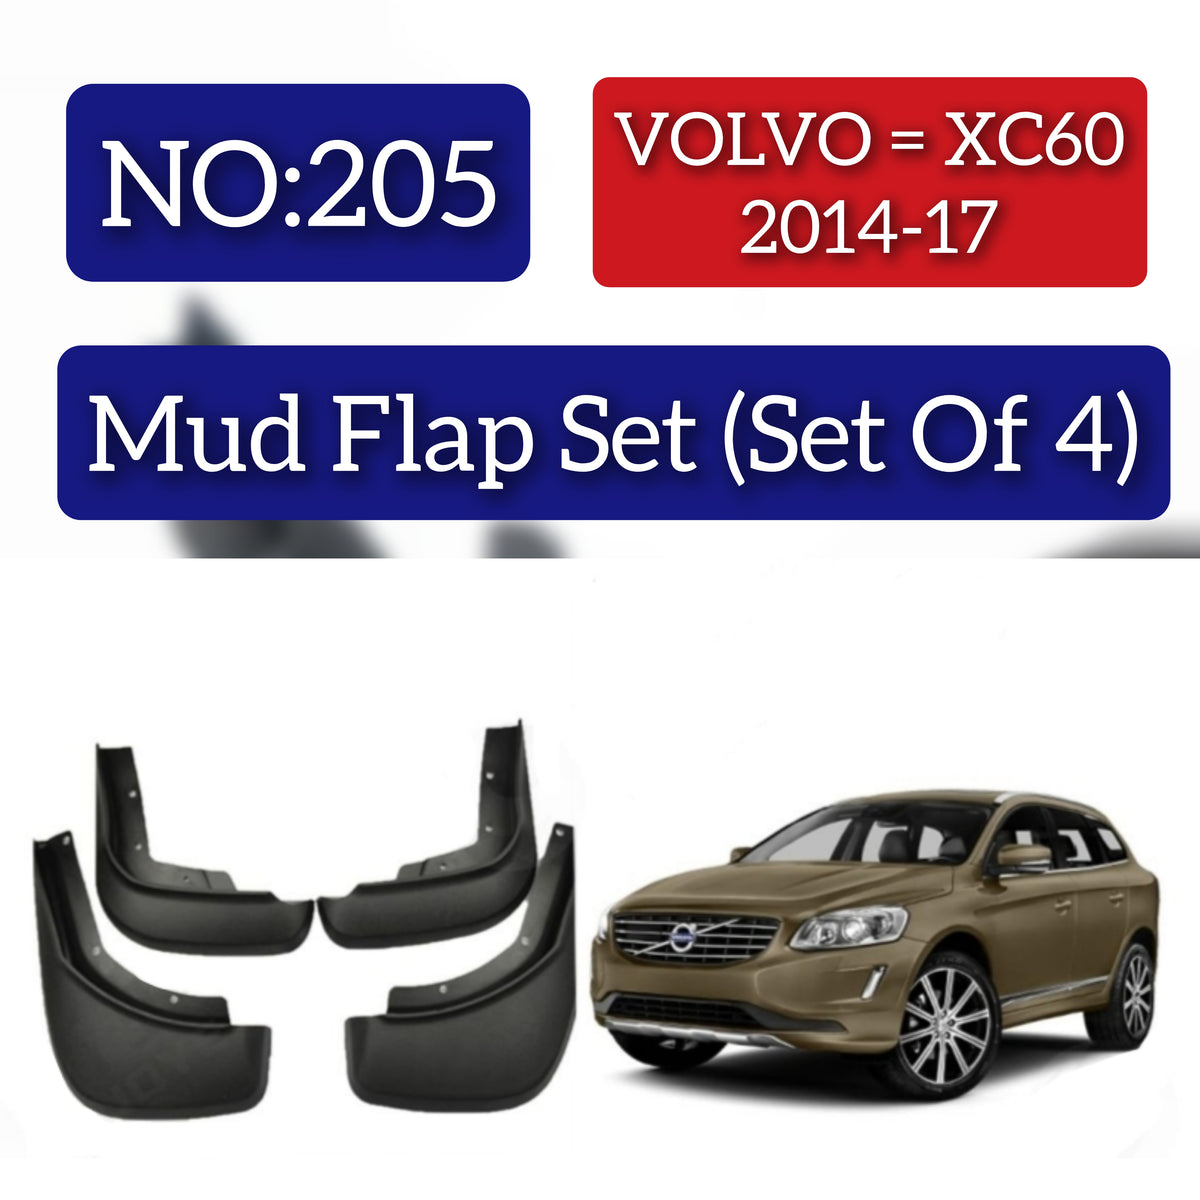 Volvo XC60 2014-17 Mud Flap Set (Set of 4) Tag 205